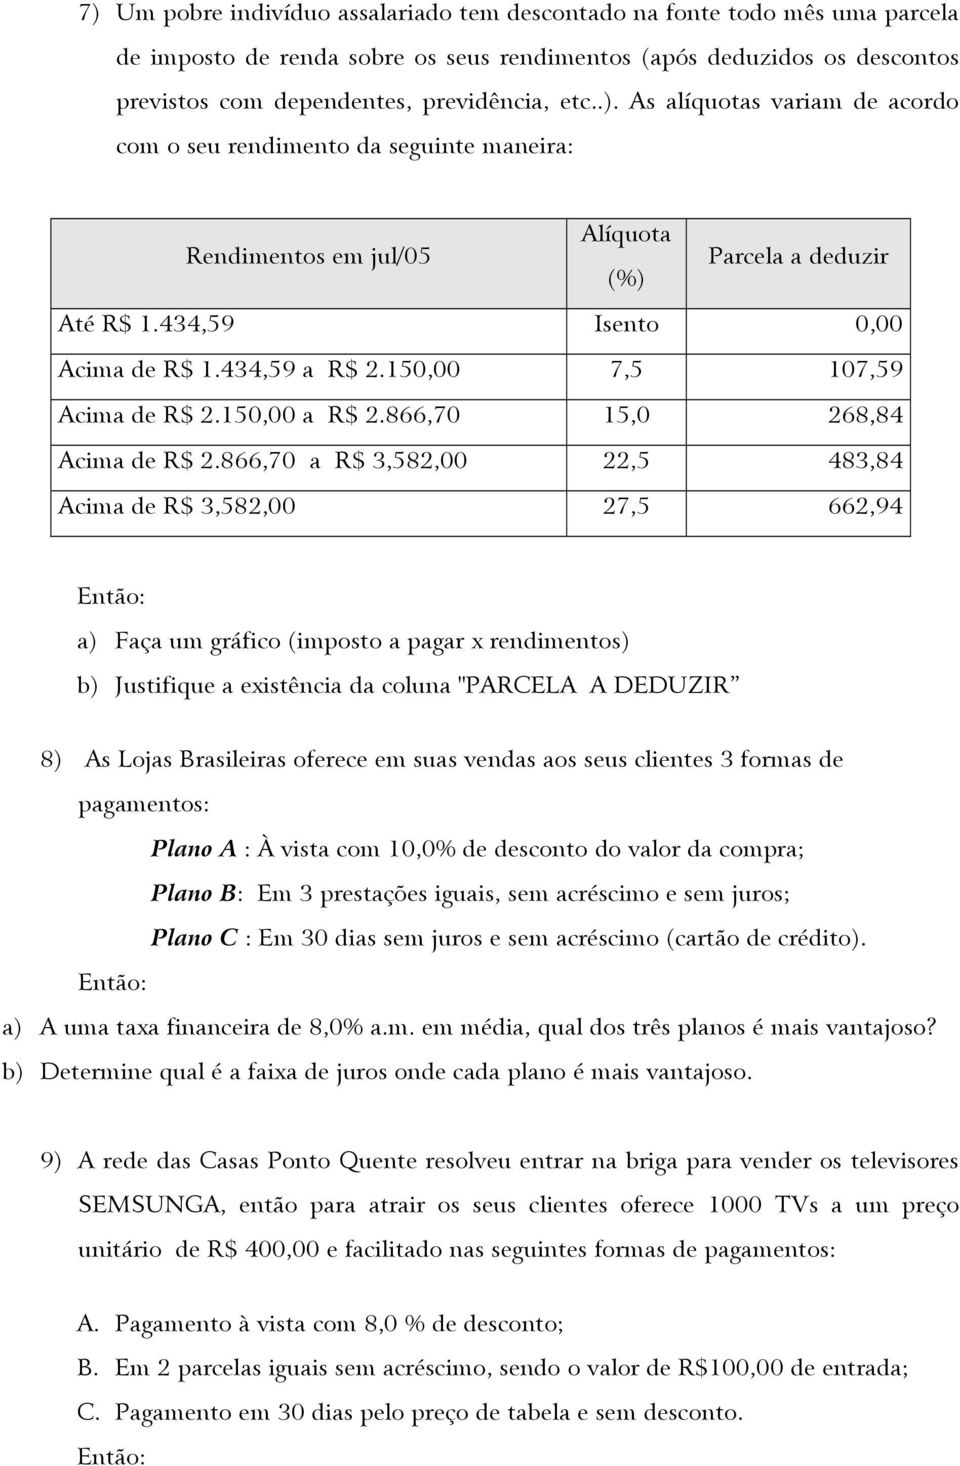 866,70 a R$ 3,582,00 22,5 483,84 Acima de R$ 3,582,00 27,5 662,94 a) Faça um gráfico (imposto a pagar x rendimentos) b) Justifique a existência da coluna "PARCELA A DEDUZIR 8) As Lojas Brasileiras